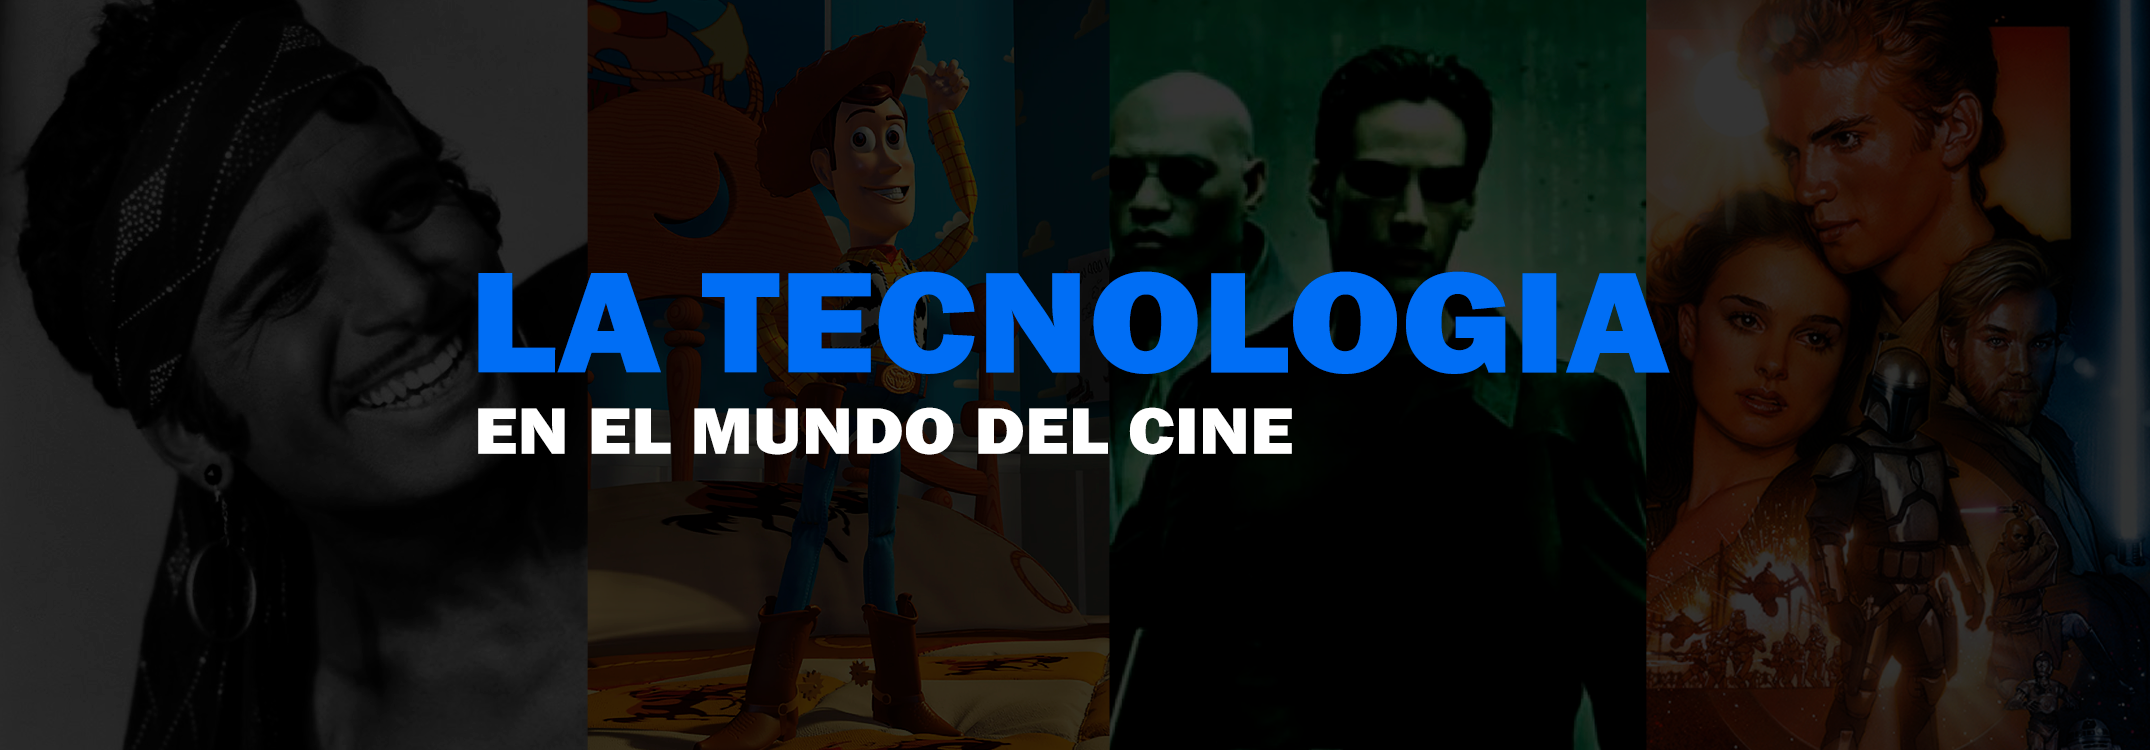 Películas con tecnologías: En el mundo del cine